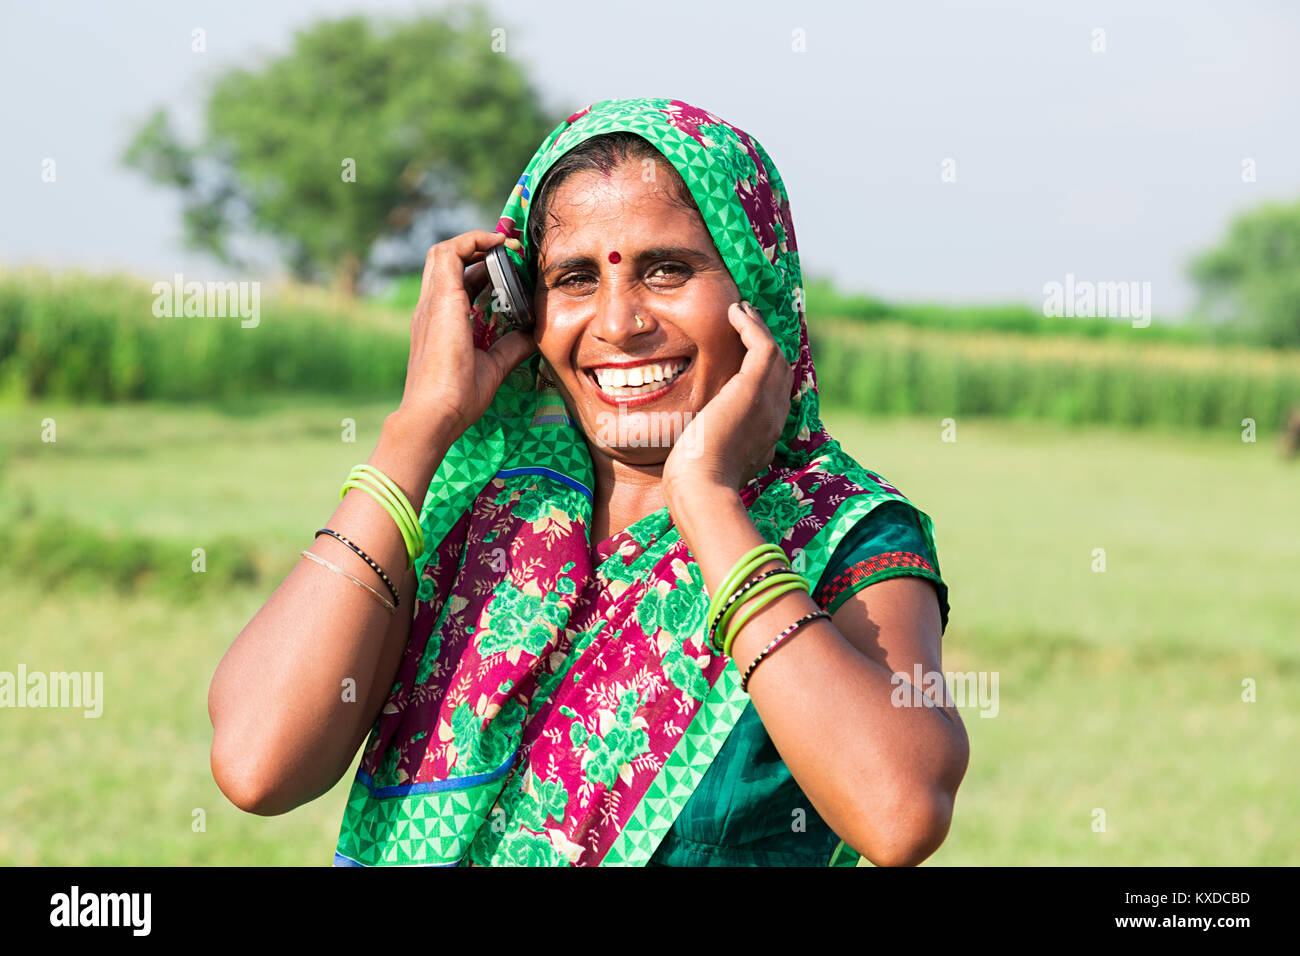 Smiling 1 femme femme au foyer rural indien Talking On Mobile Phone Banque D'Images